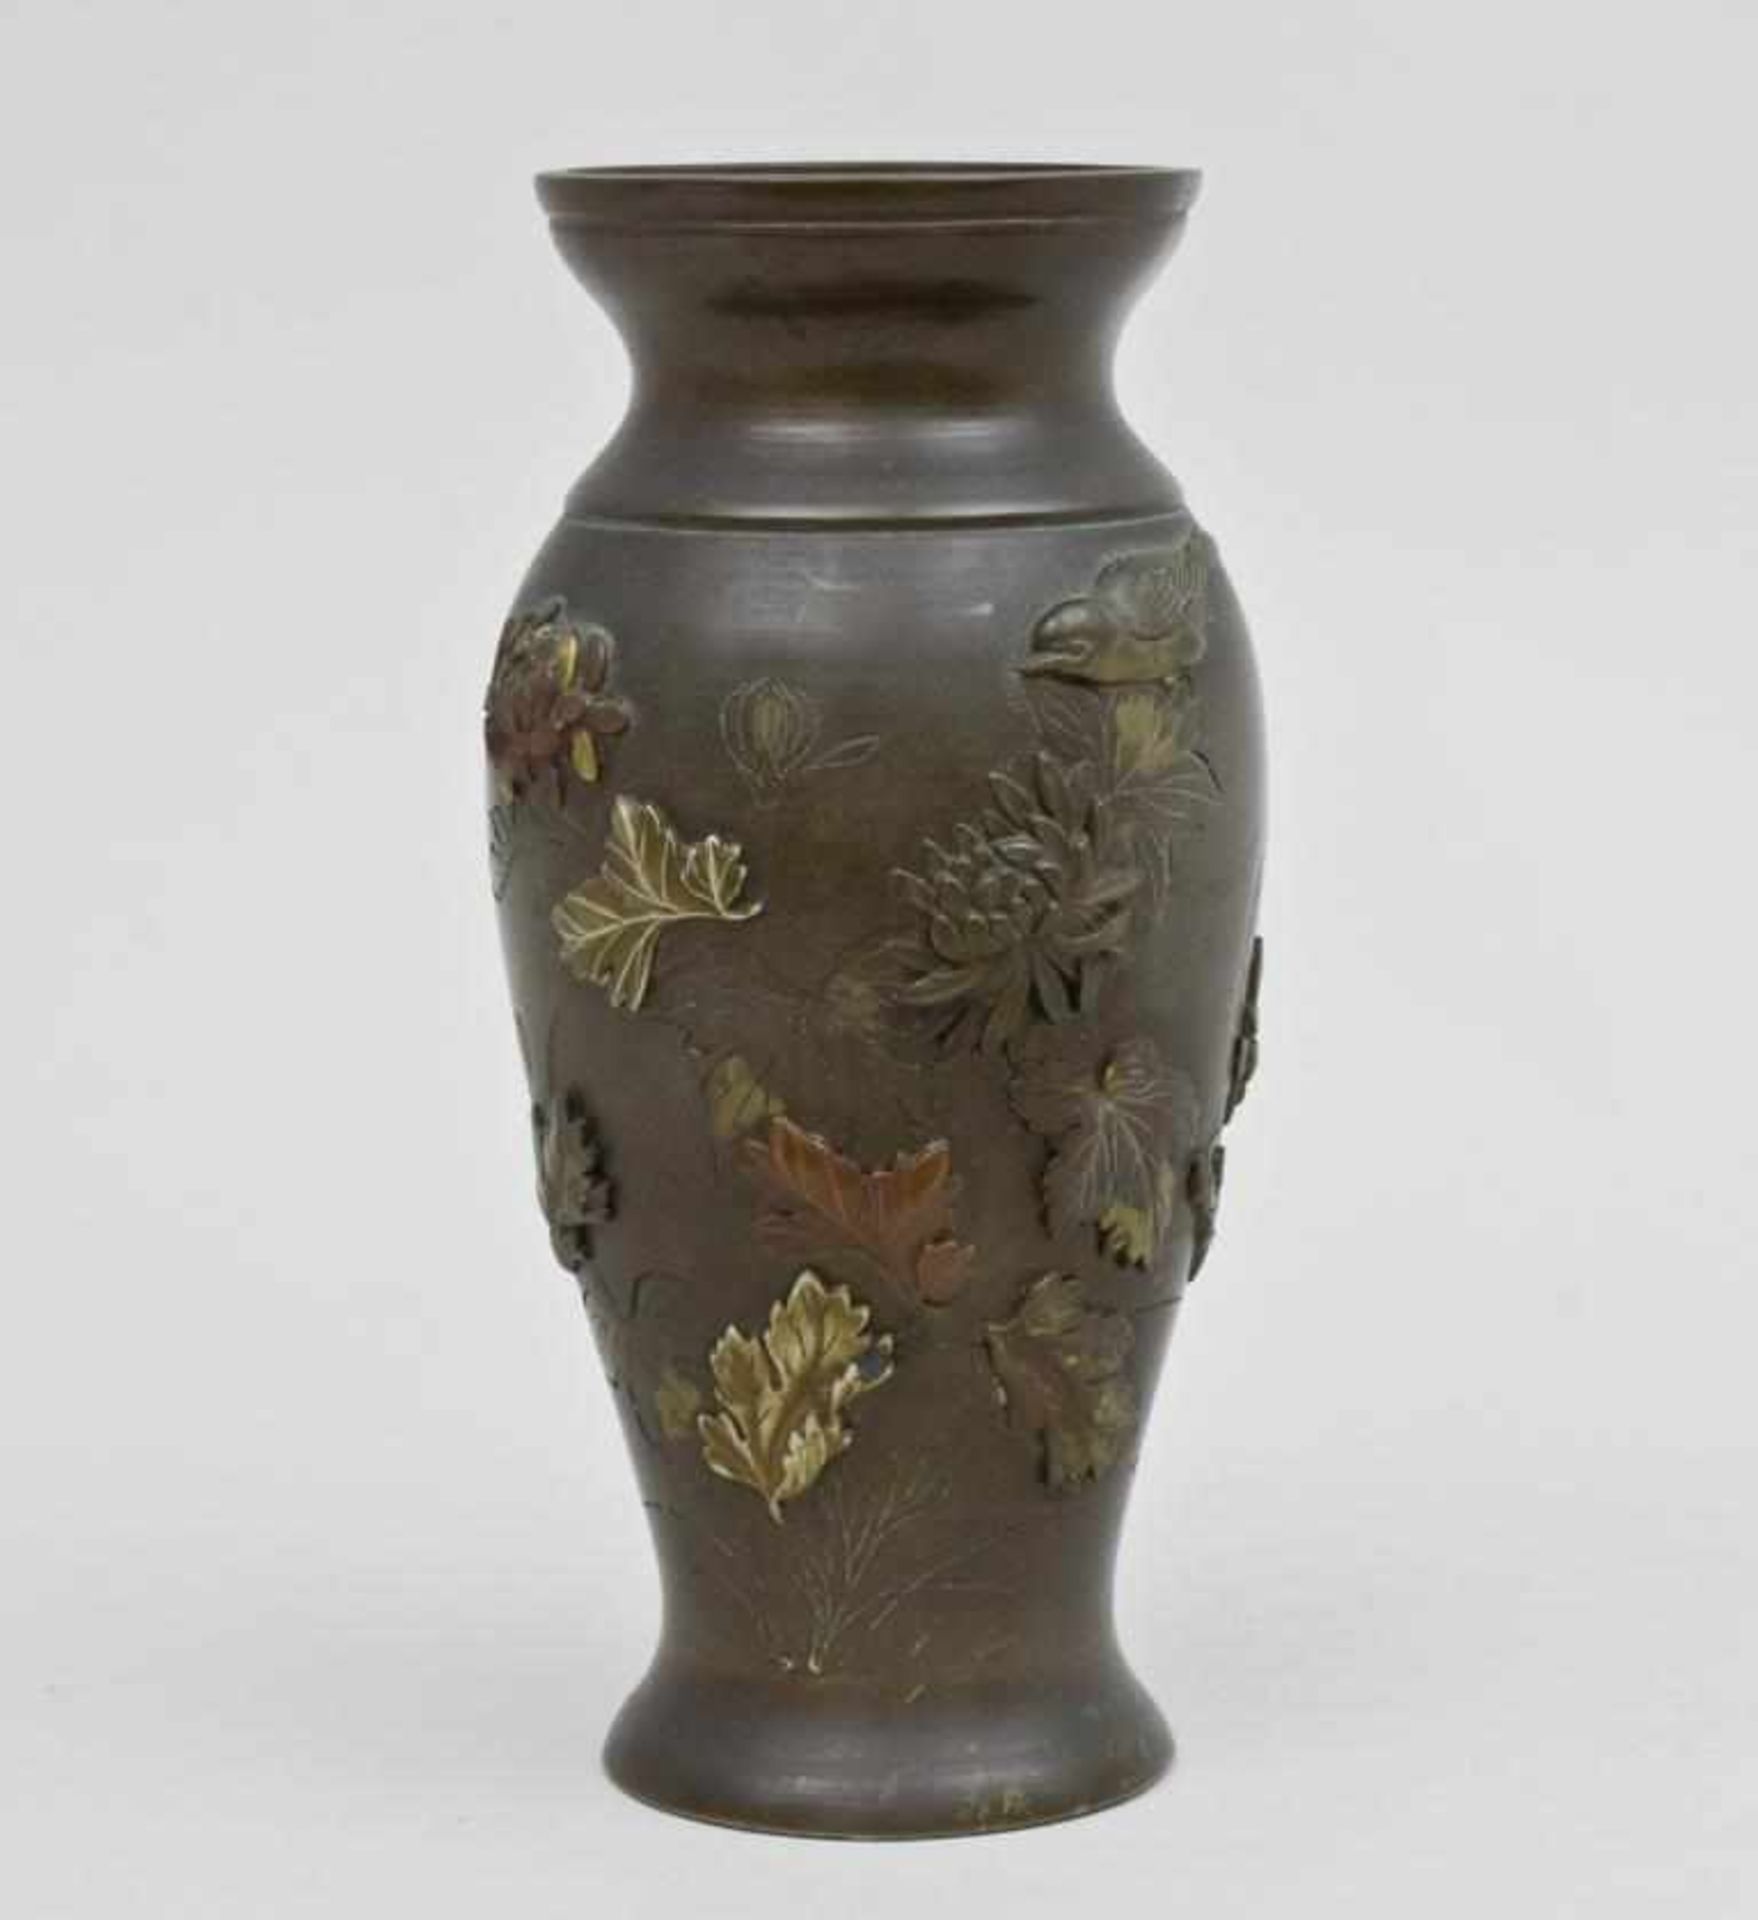 Vase, Meiji-Periode, Japan, Ende 19. Jh.konische Form mit leicht ausgestelltem Rand. Umlaufend